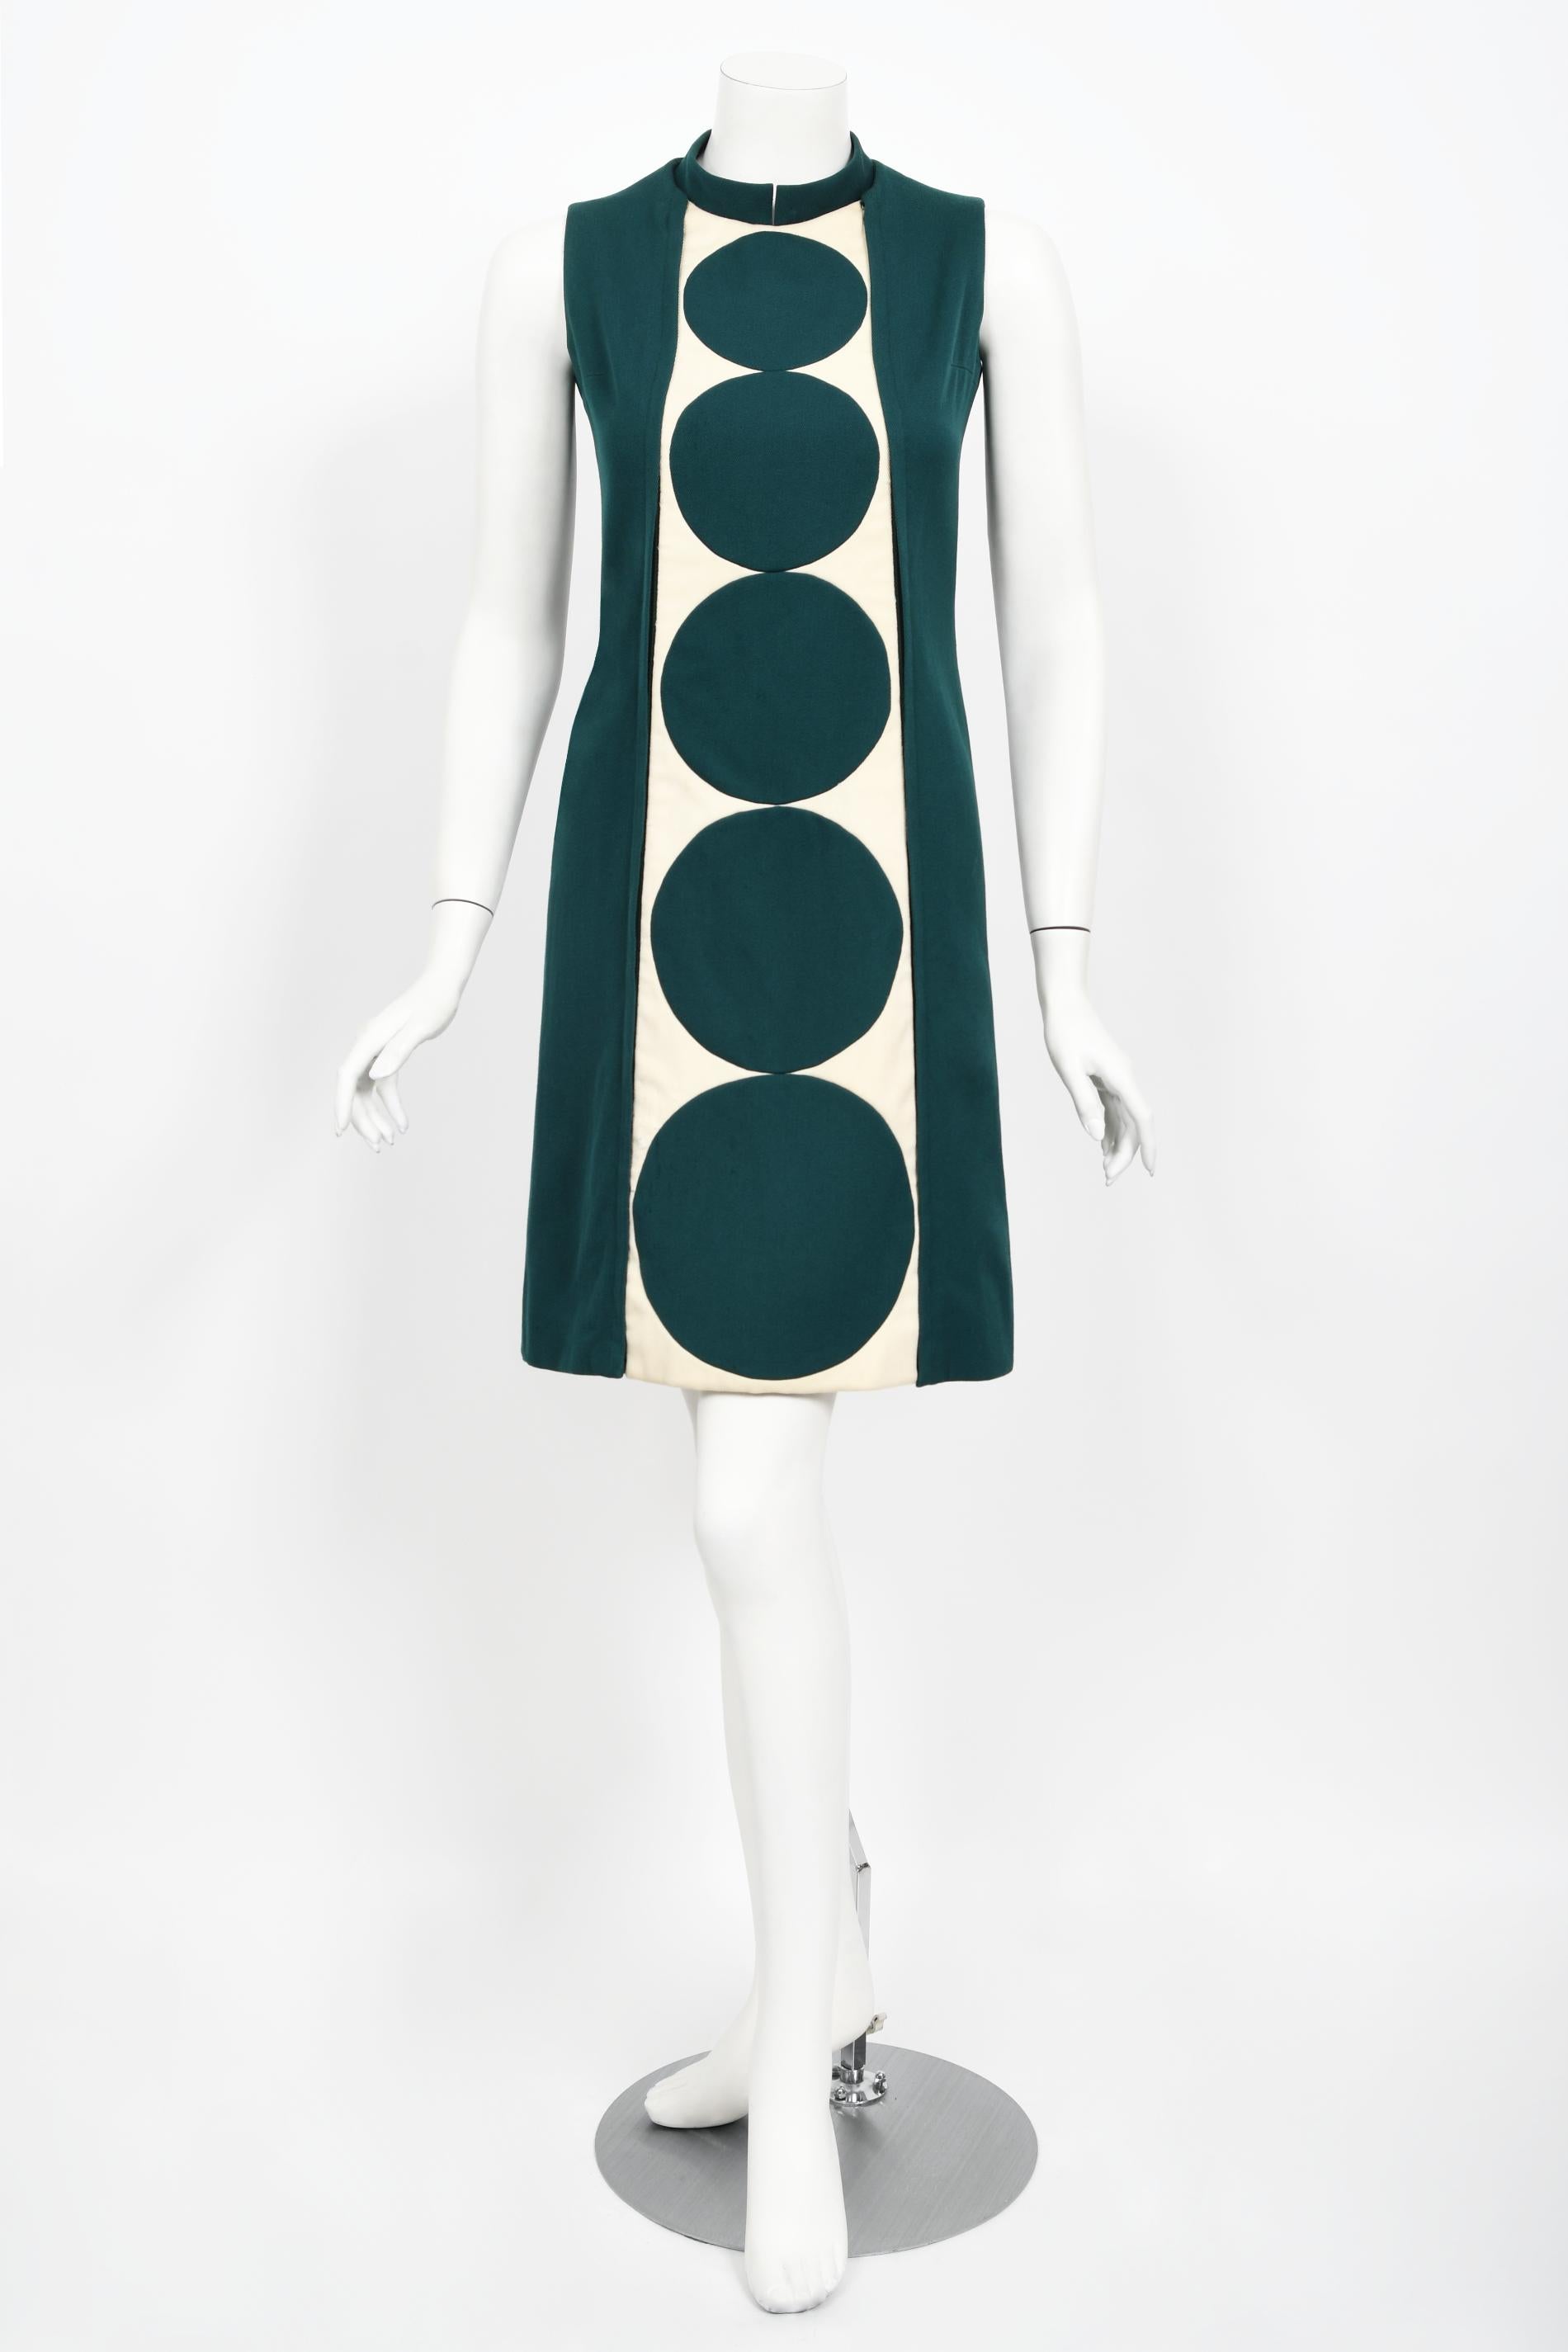 Vintage 1966 Jacques Esterel Haute Couture Documented Teal Blue Op-Art Mod Dress For Sale 1